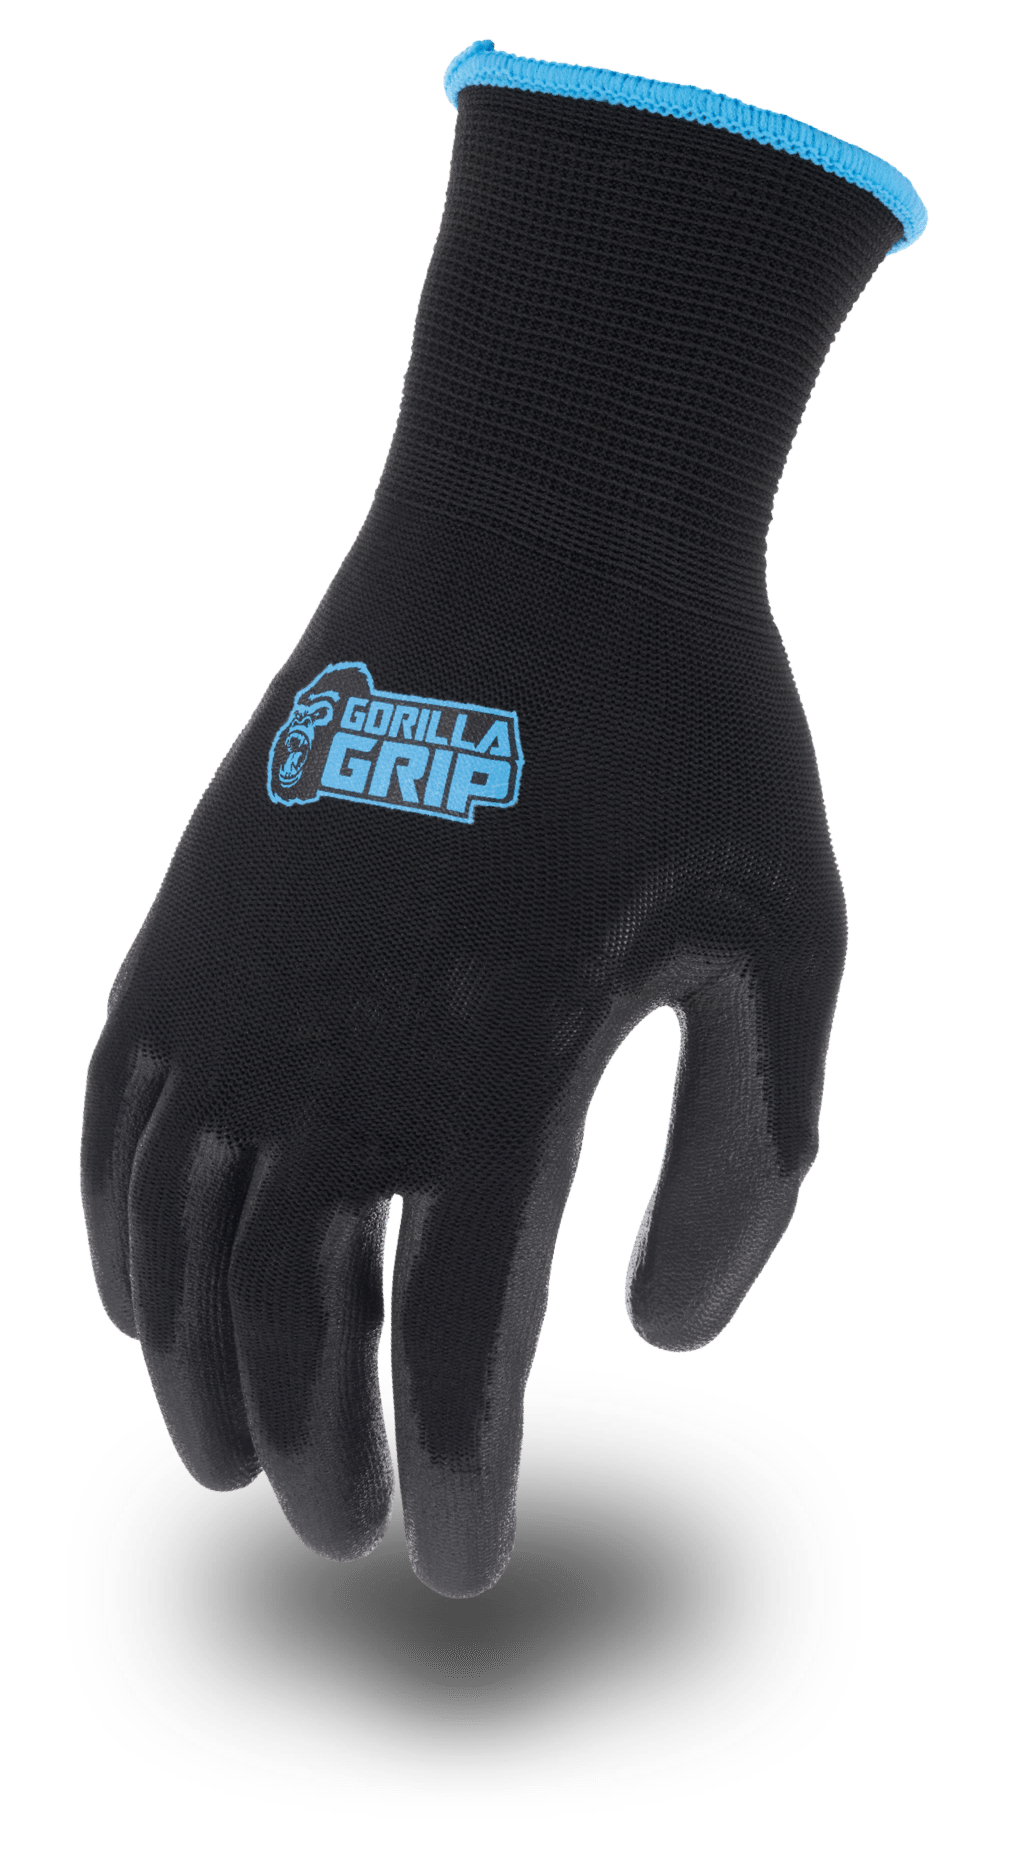 Home - Gorilla Grip